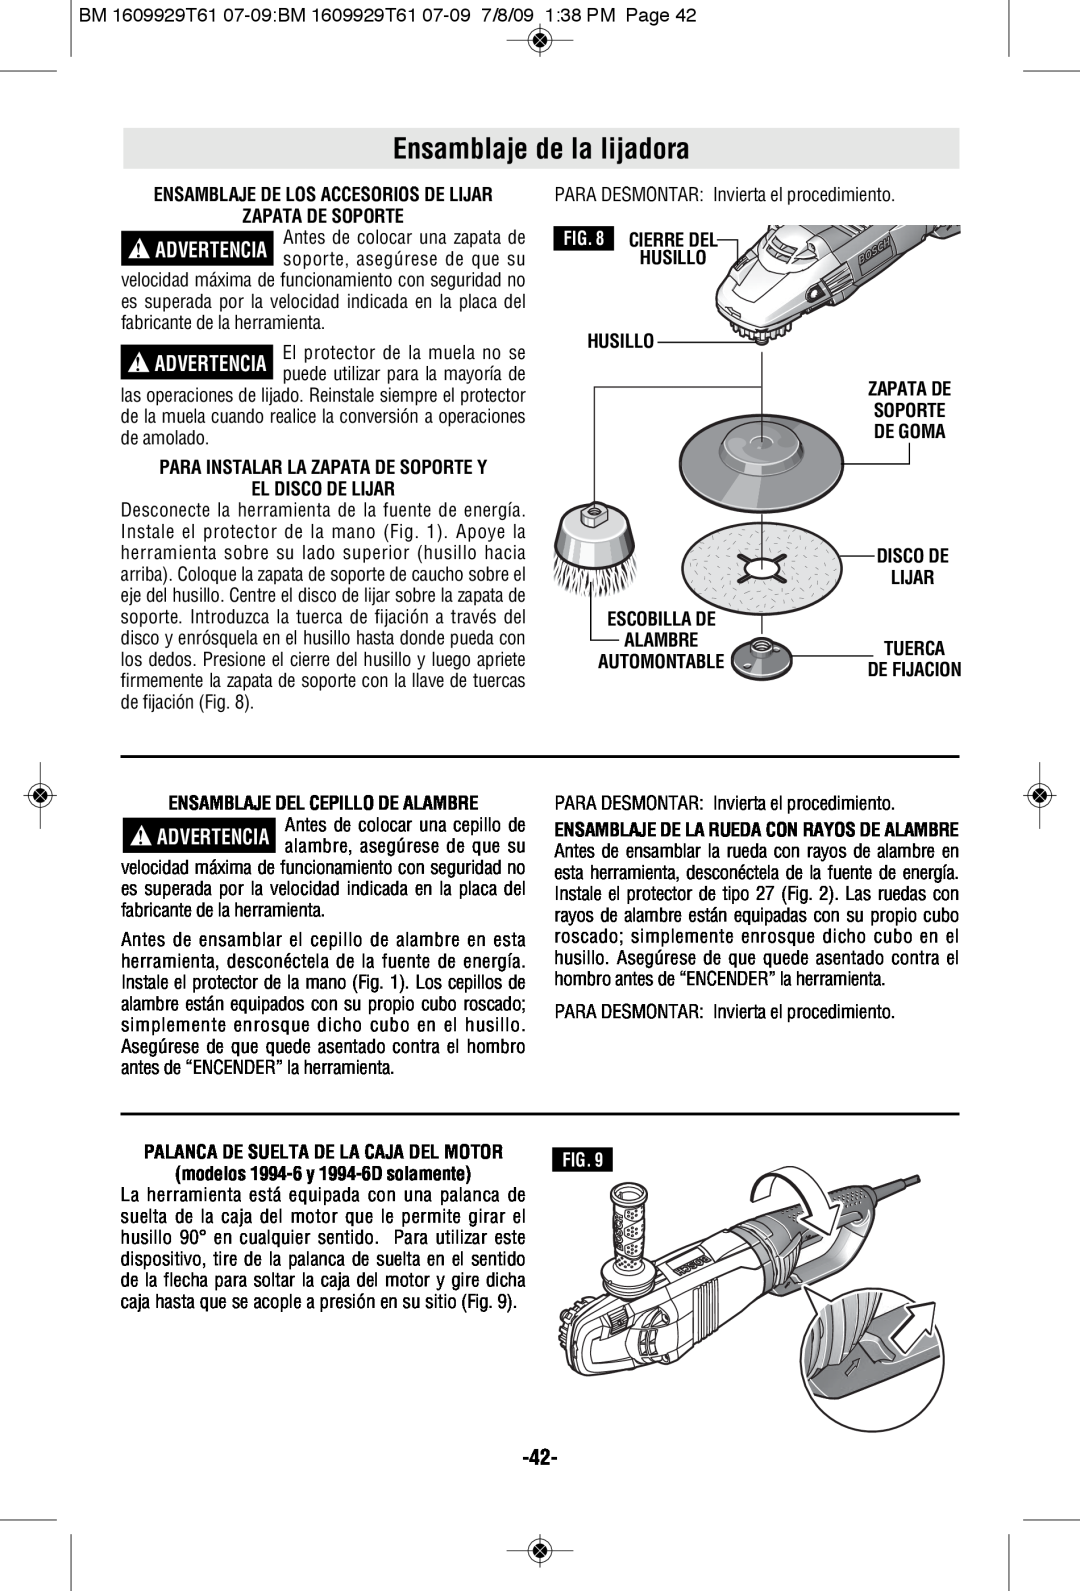 Bosch Power Tools 1994-6D, 1974-8D manual Ensamblaje de la lijadora, Zapata De Soporte, El Disco De Lijar 